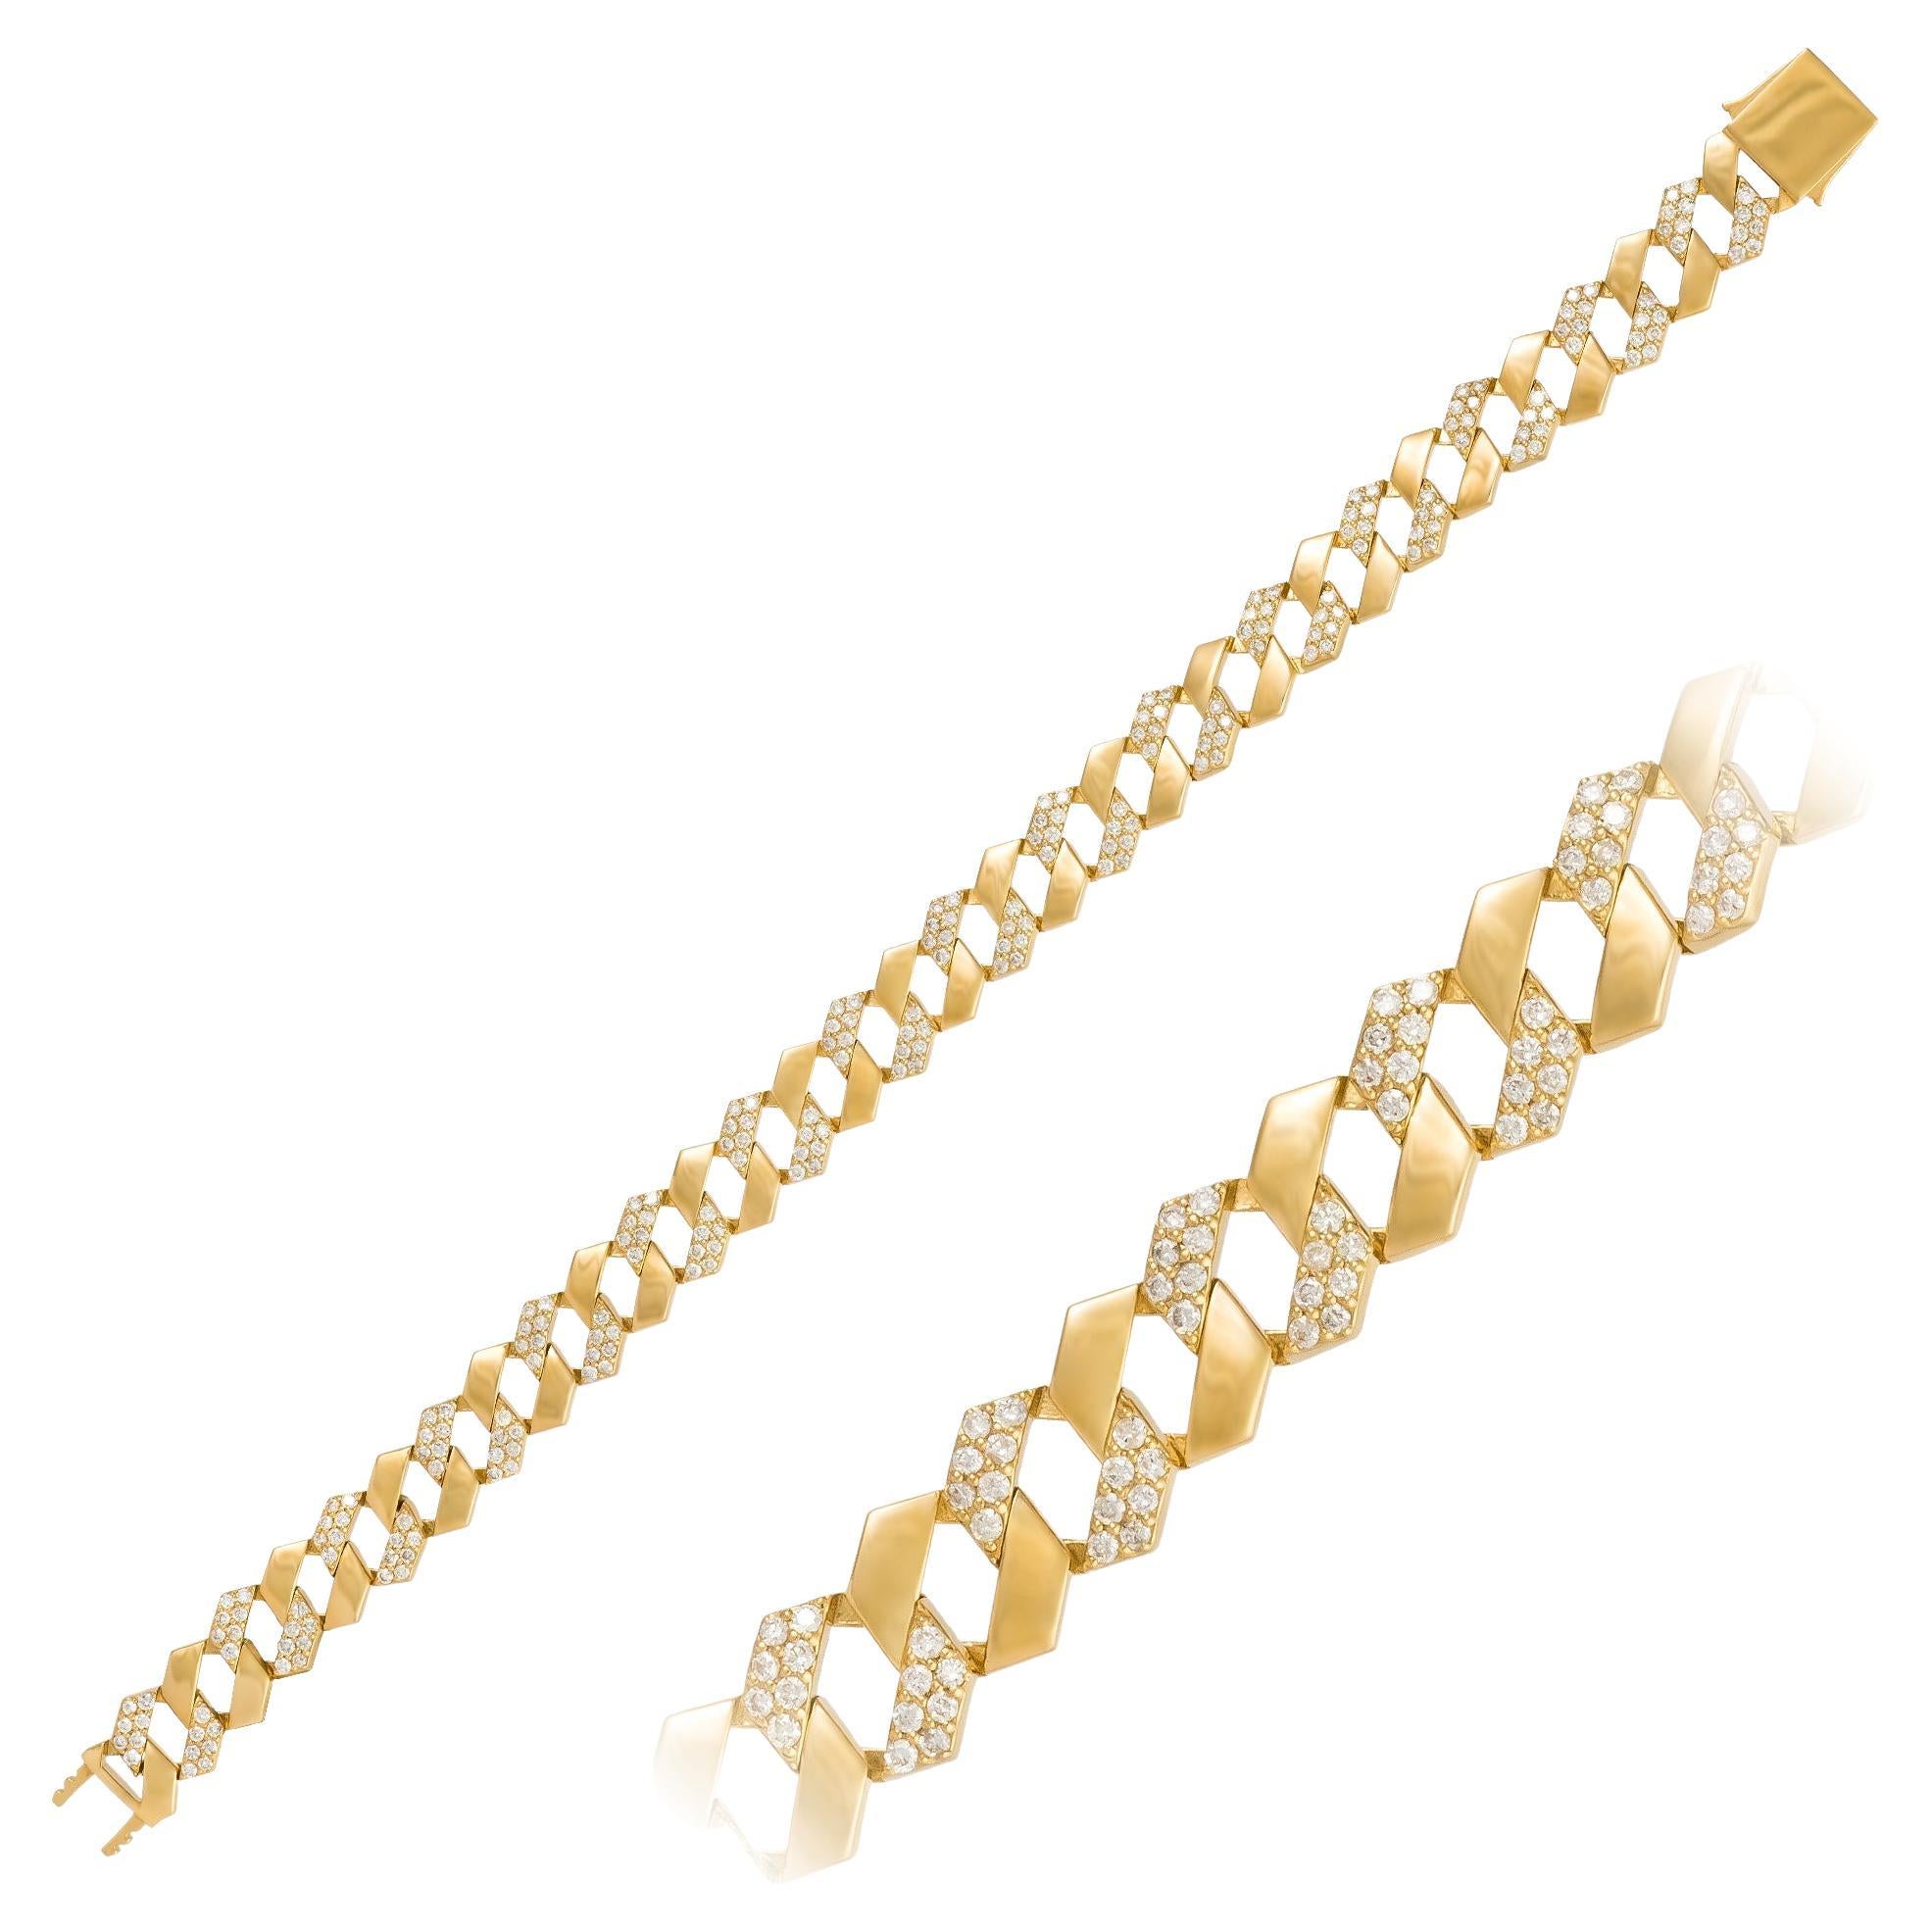 Chain White Yellow Gold 18K Bracelet Diamond For Her